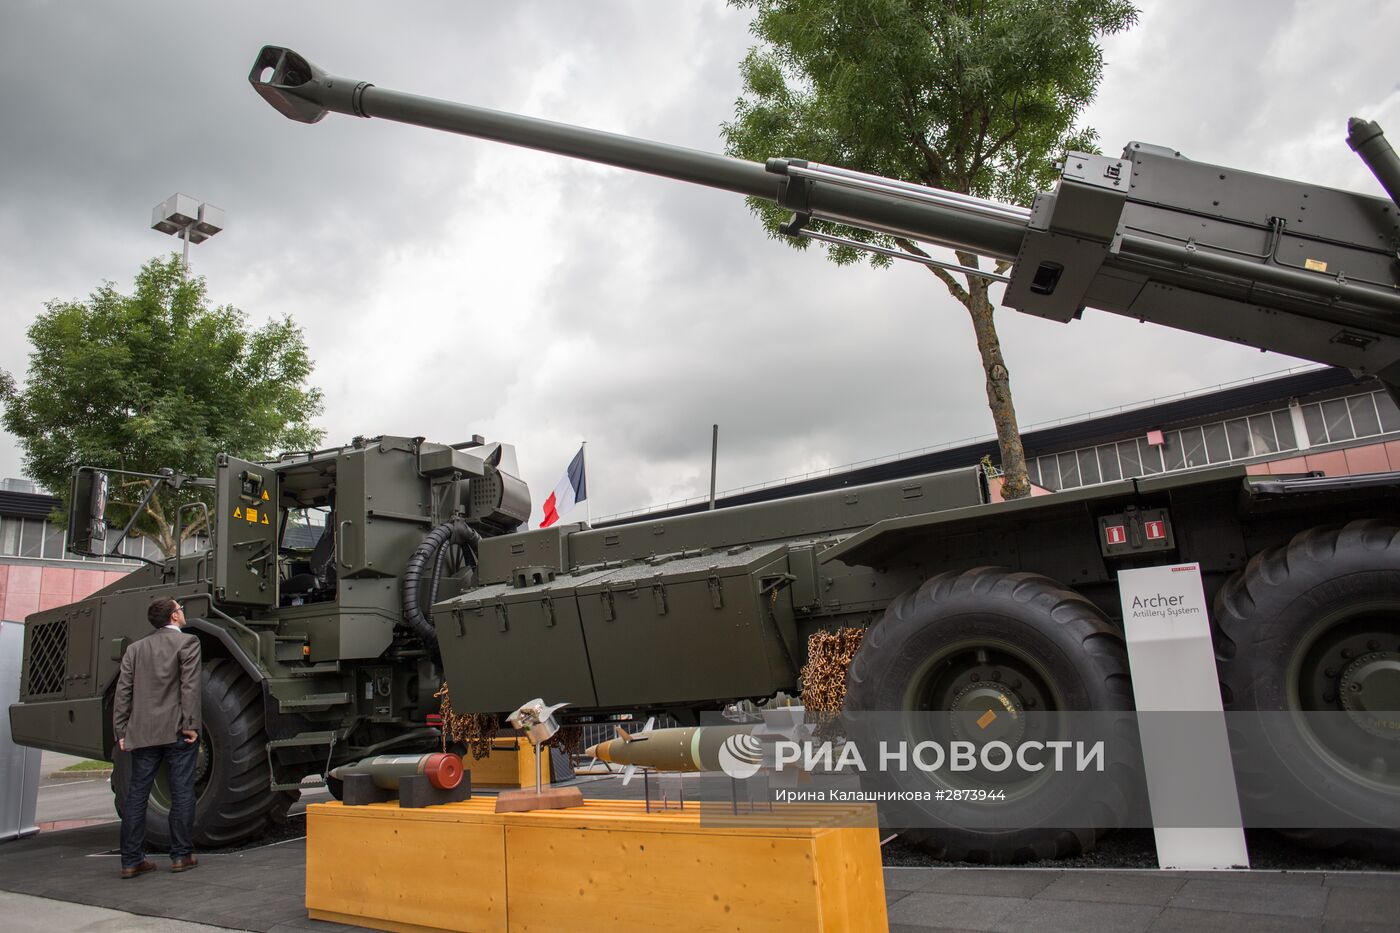 Международная выставка вооружений EUROSATORY в Париже